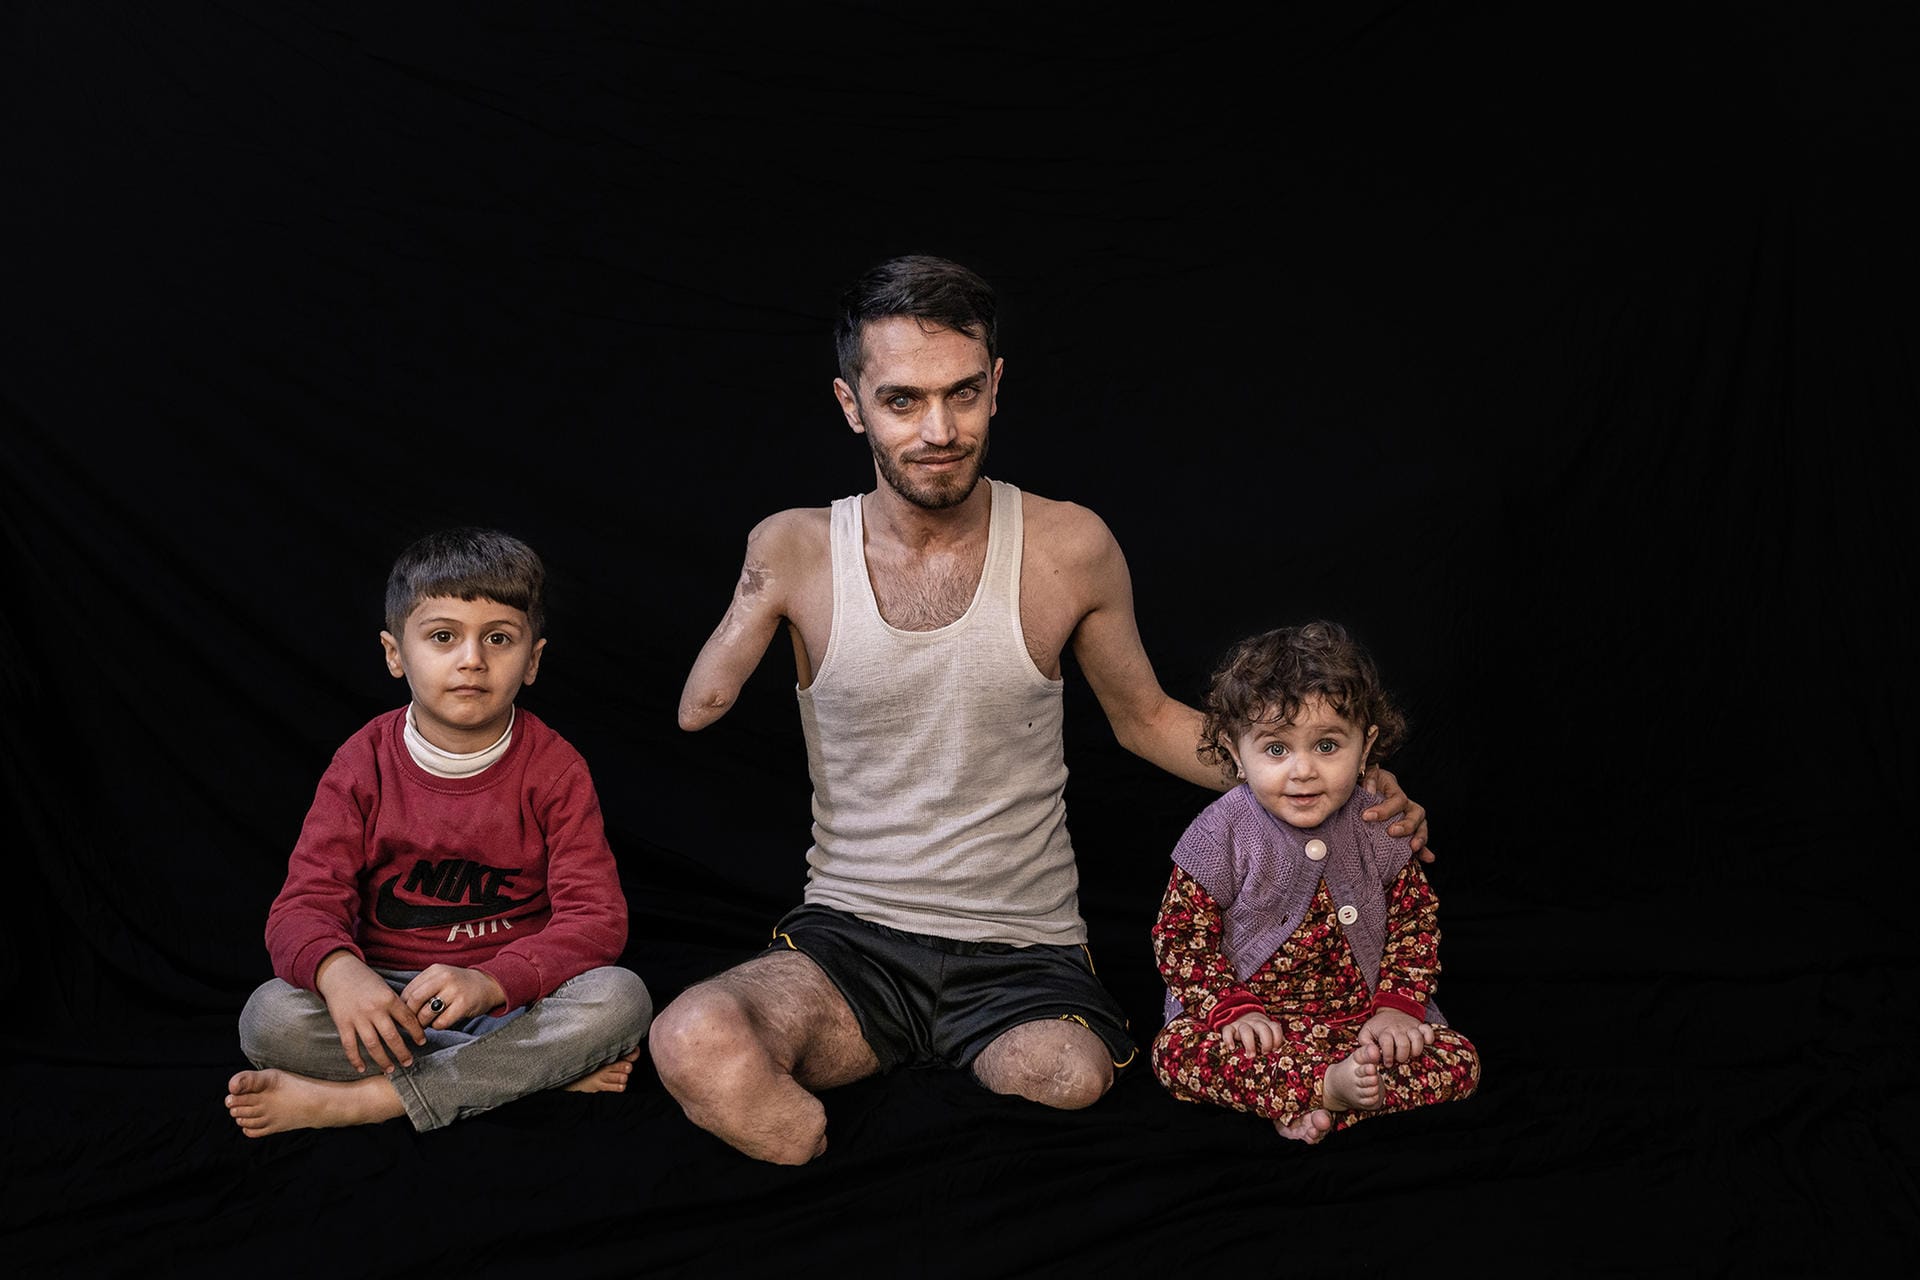 Der 3. Platz 2021 geht an ein Bild aus dem Irak. Der Fotograf Younes Mohammad erzählt von Kindern, deren Väter durch Kriege, Minen und Gefechte verletzt wurden. Und von der Kraft der Kinder, die lernen, mit den Behinderungen ihrer Väter umzugehen.